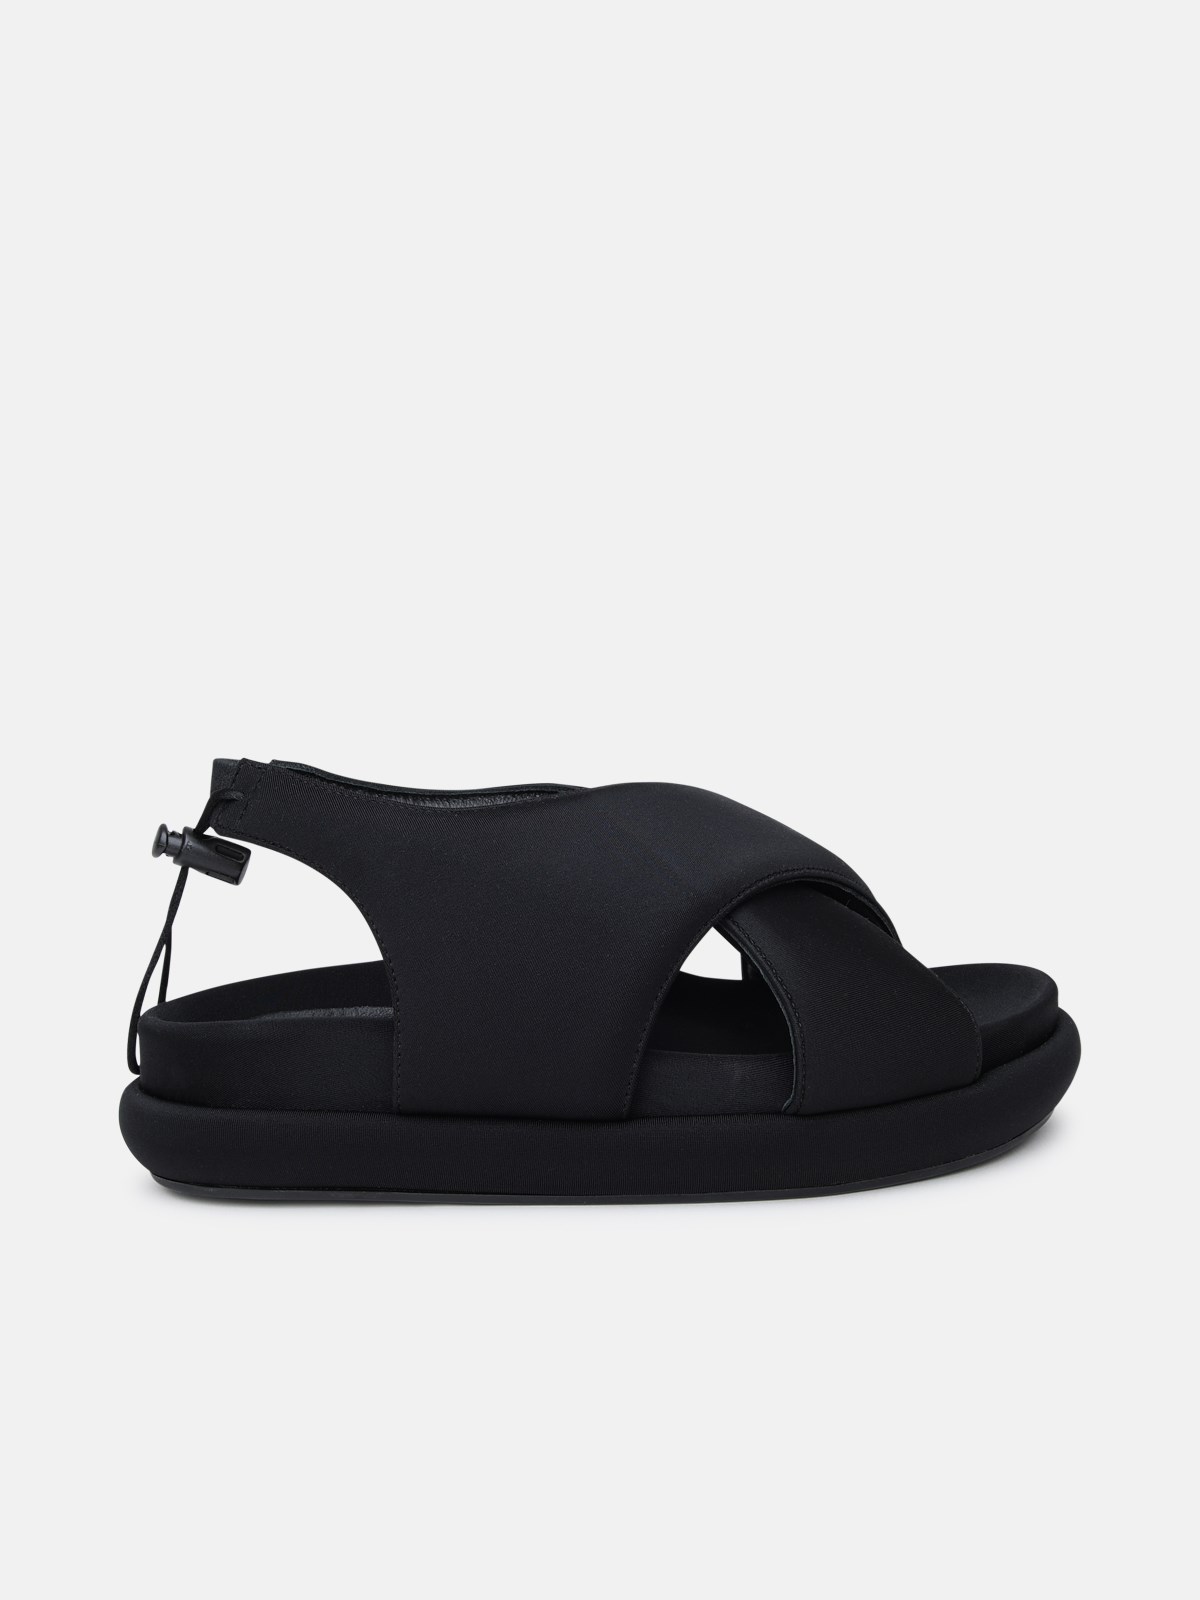 Gia X Pernille Teisbaek Gia 29 Sandals In Black Fabric